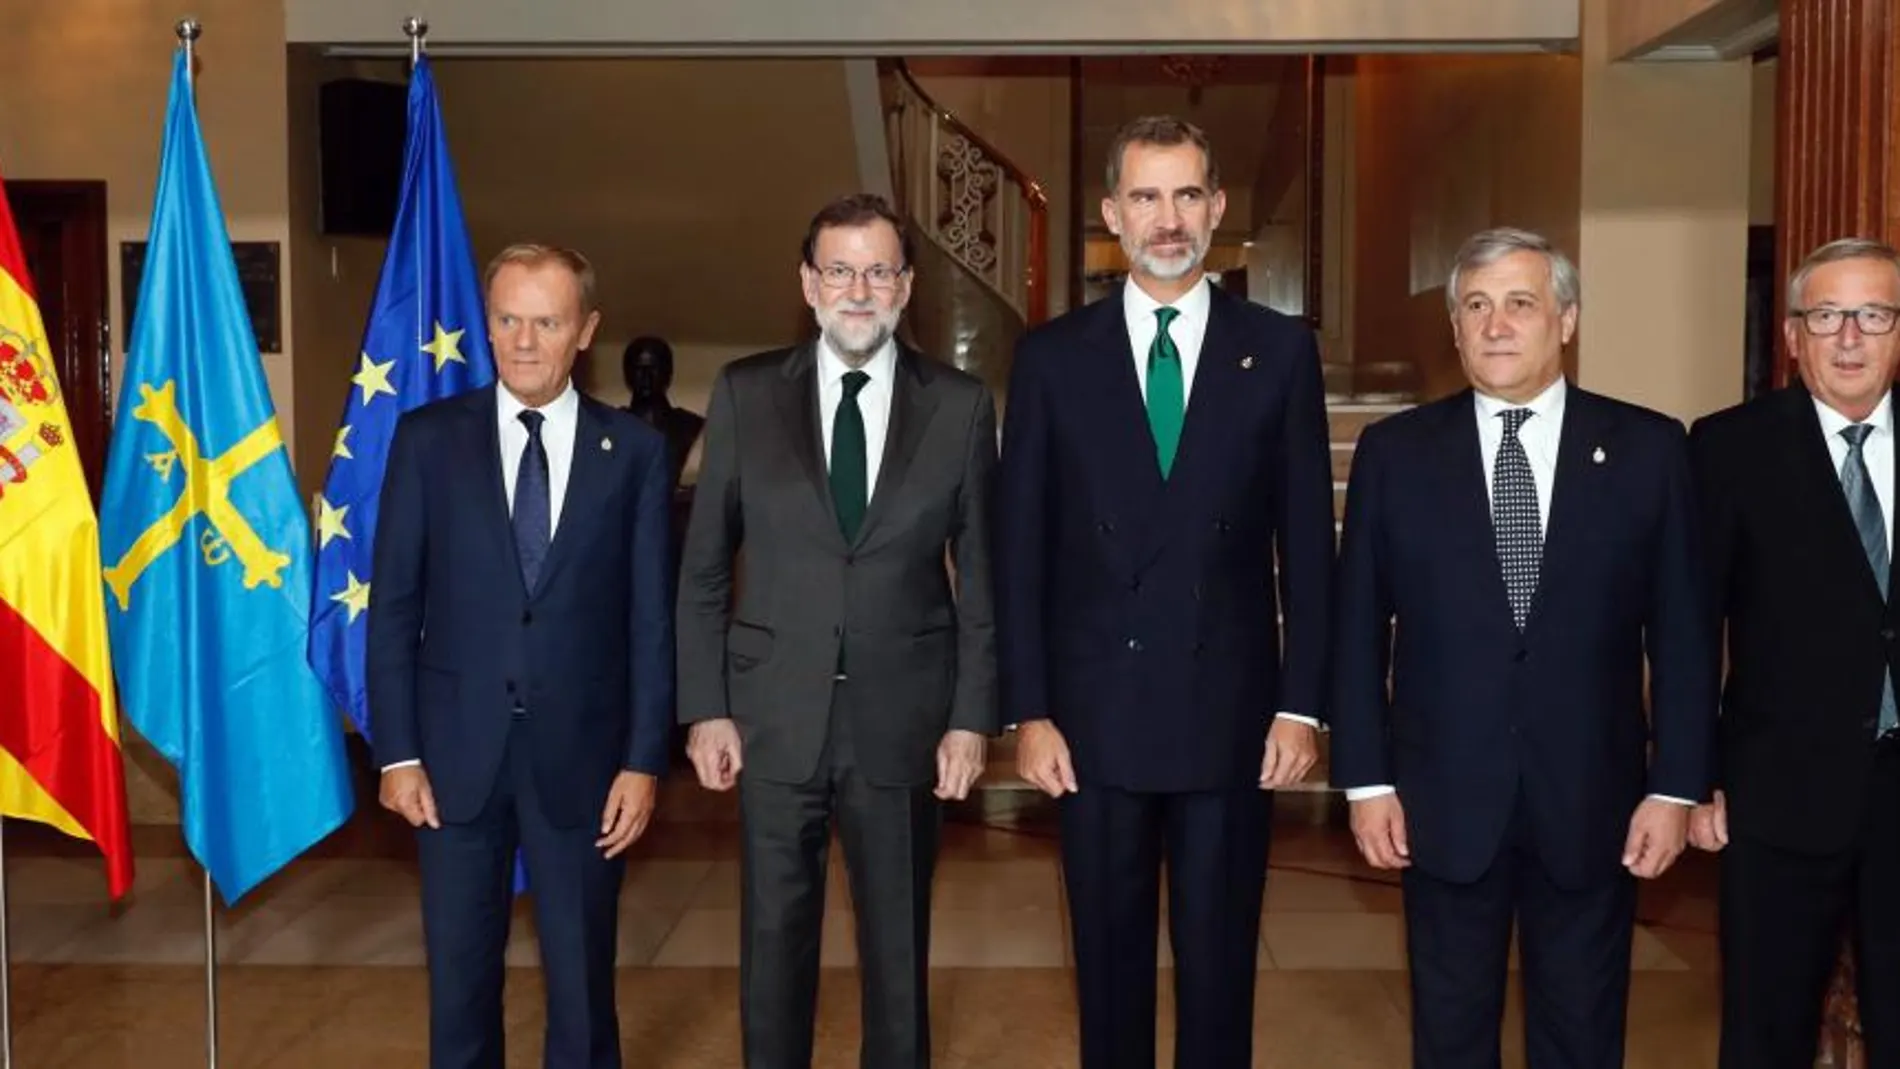 El Rey Felipe VI posa junto al presidente del Gobierno español, Mariano Rajoy, el presidente del Consejo Europeo, Donald Tusk, el presidente del Parlamento Europeo, Antonio Tajani, y el presidente de la Comisión Europea (CE), Jean-Claude Juncker